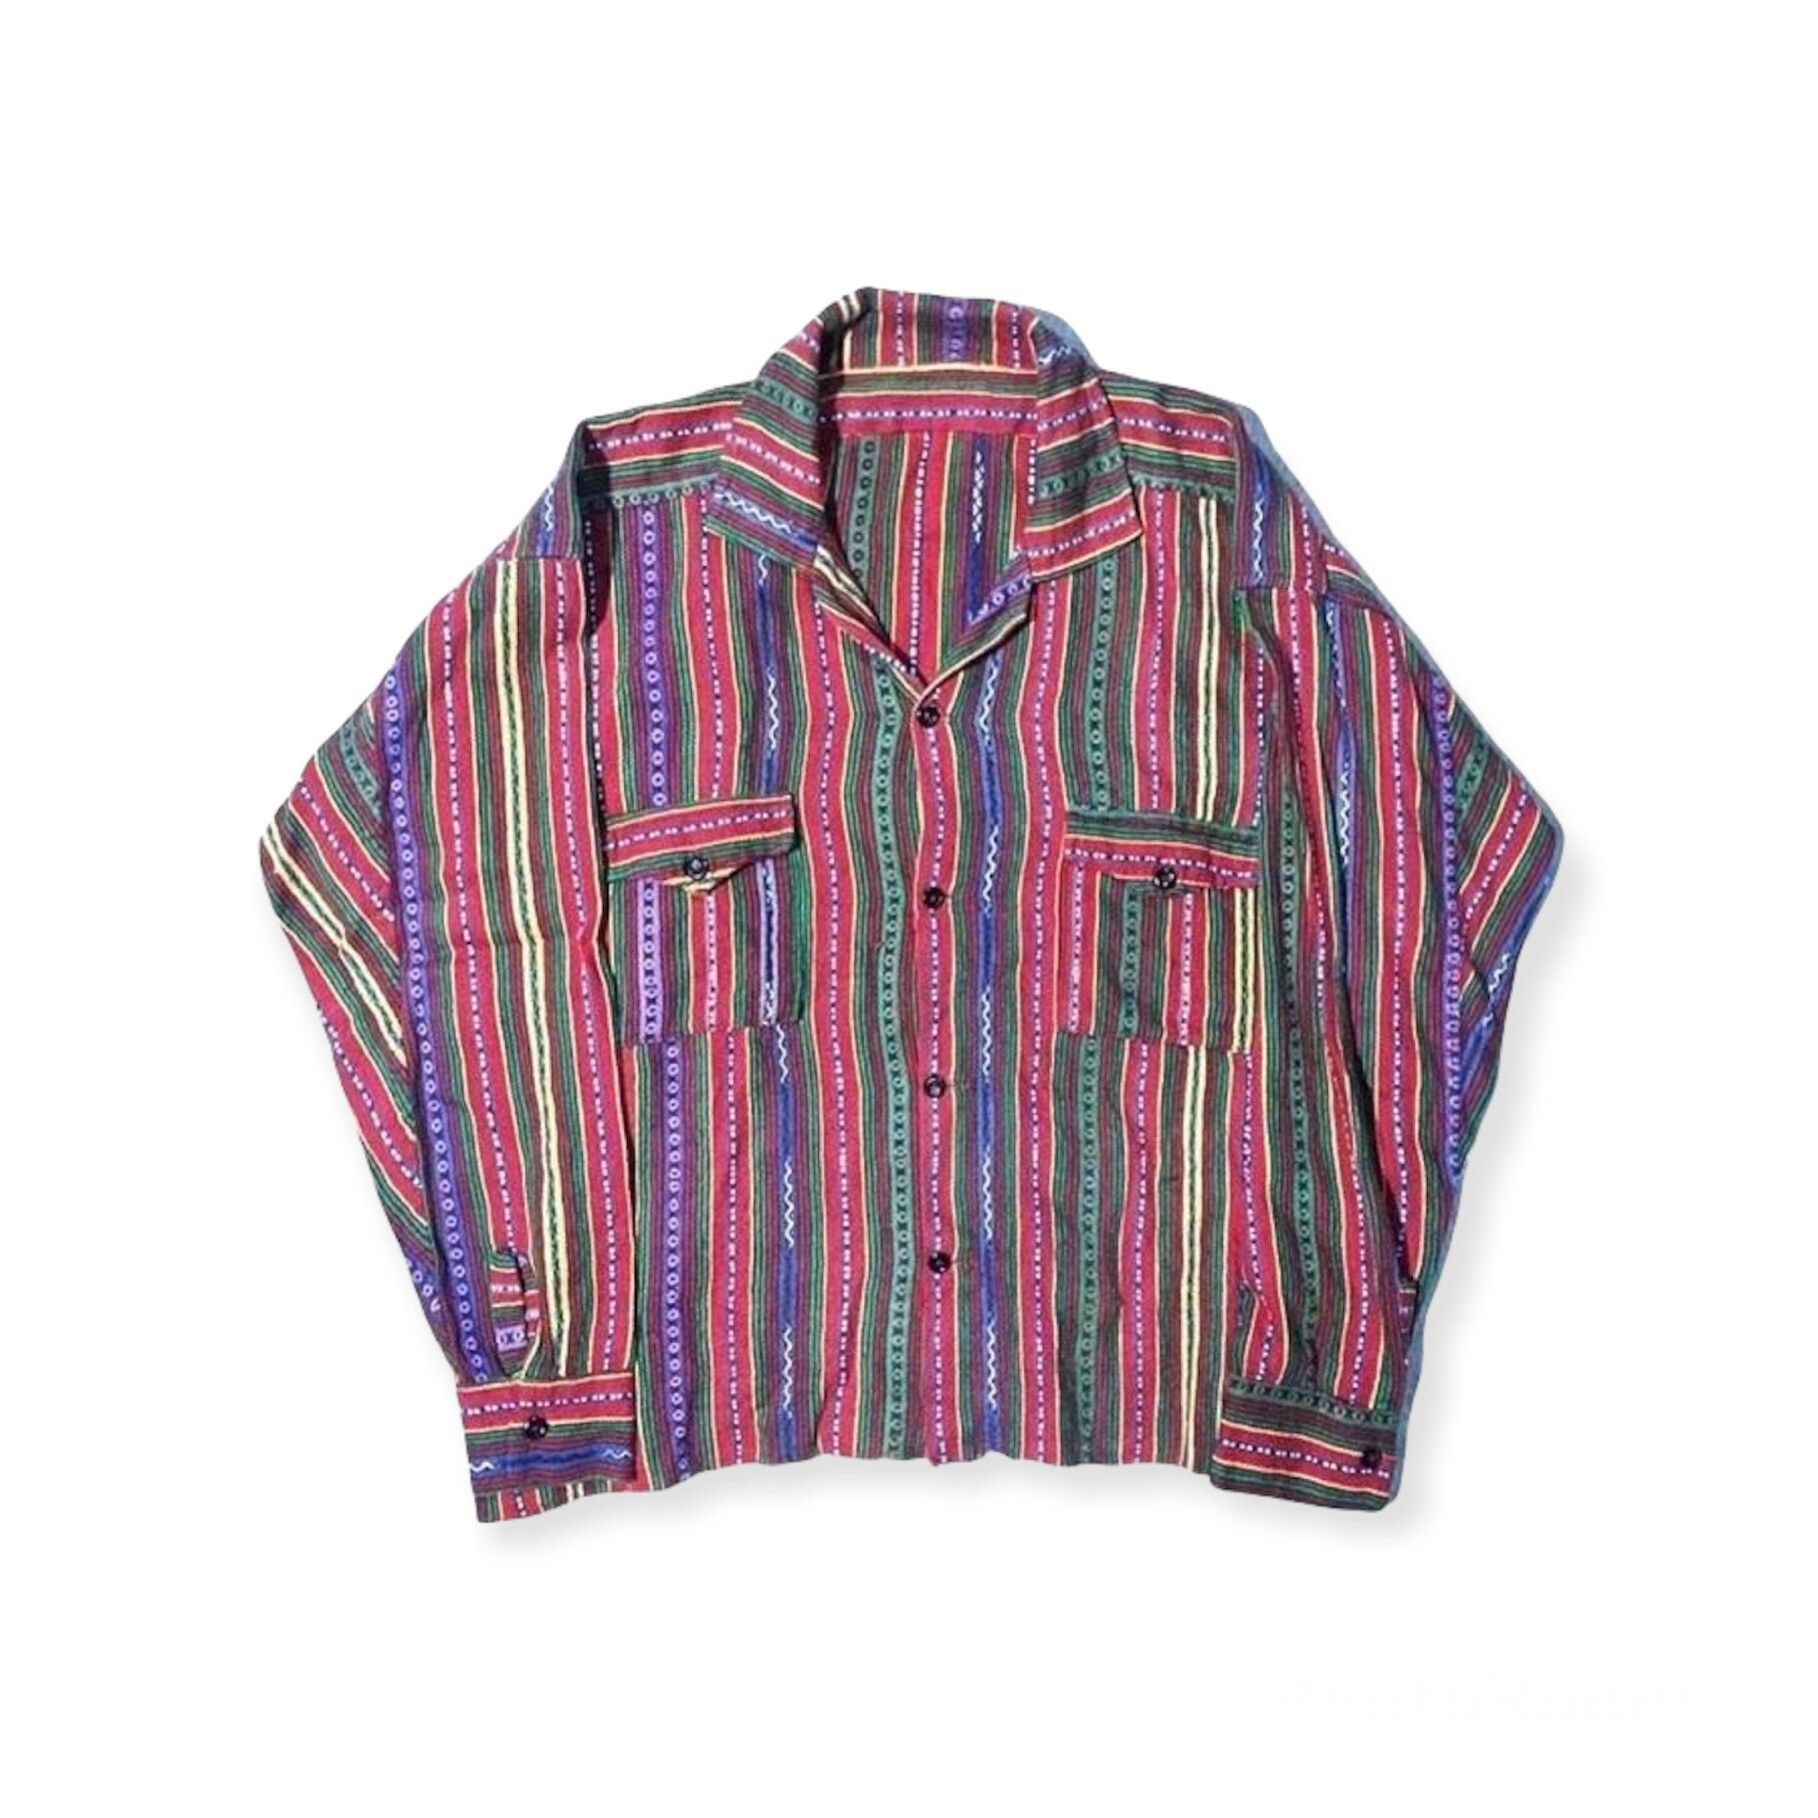 Vintage vintage native navajo shirt jacket | Grailed